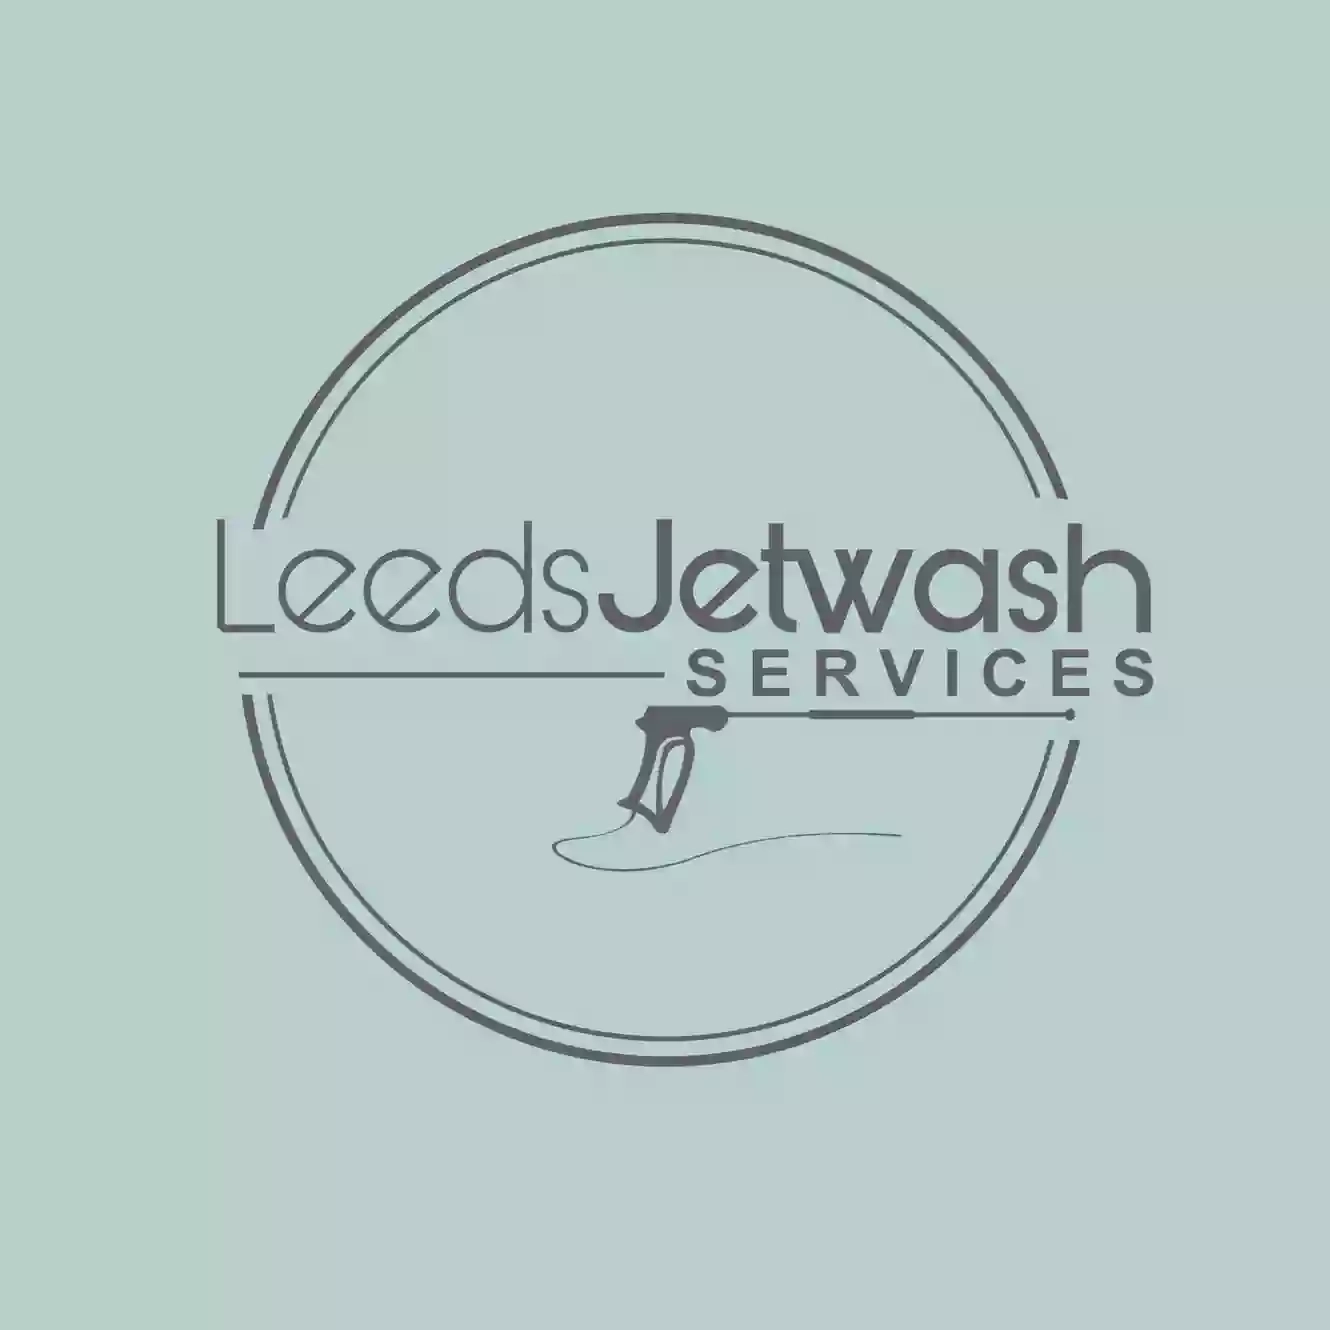 Leeds Jet Wash Services ltd